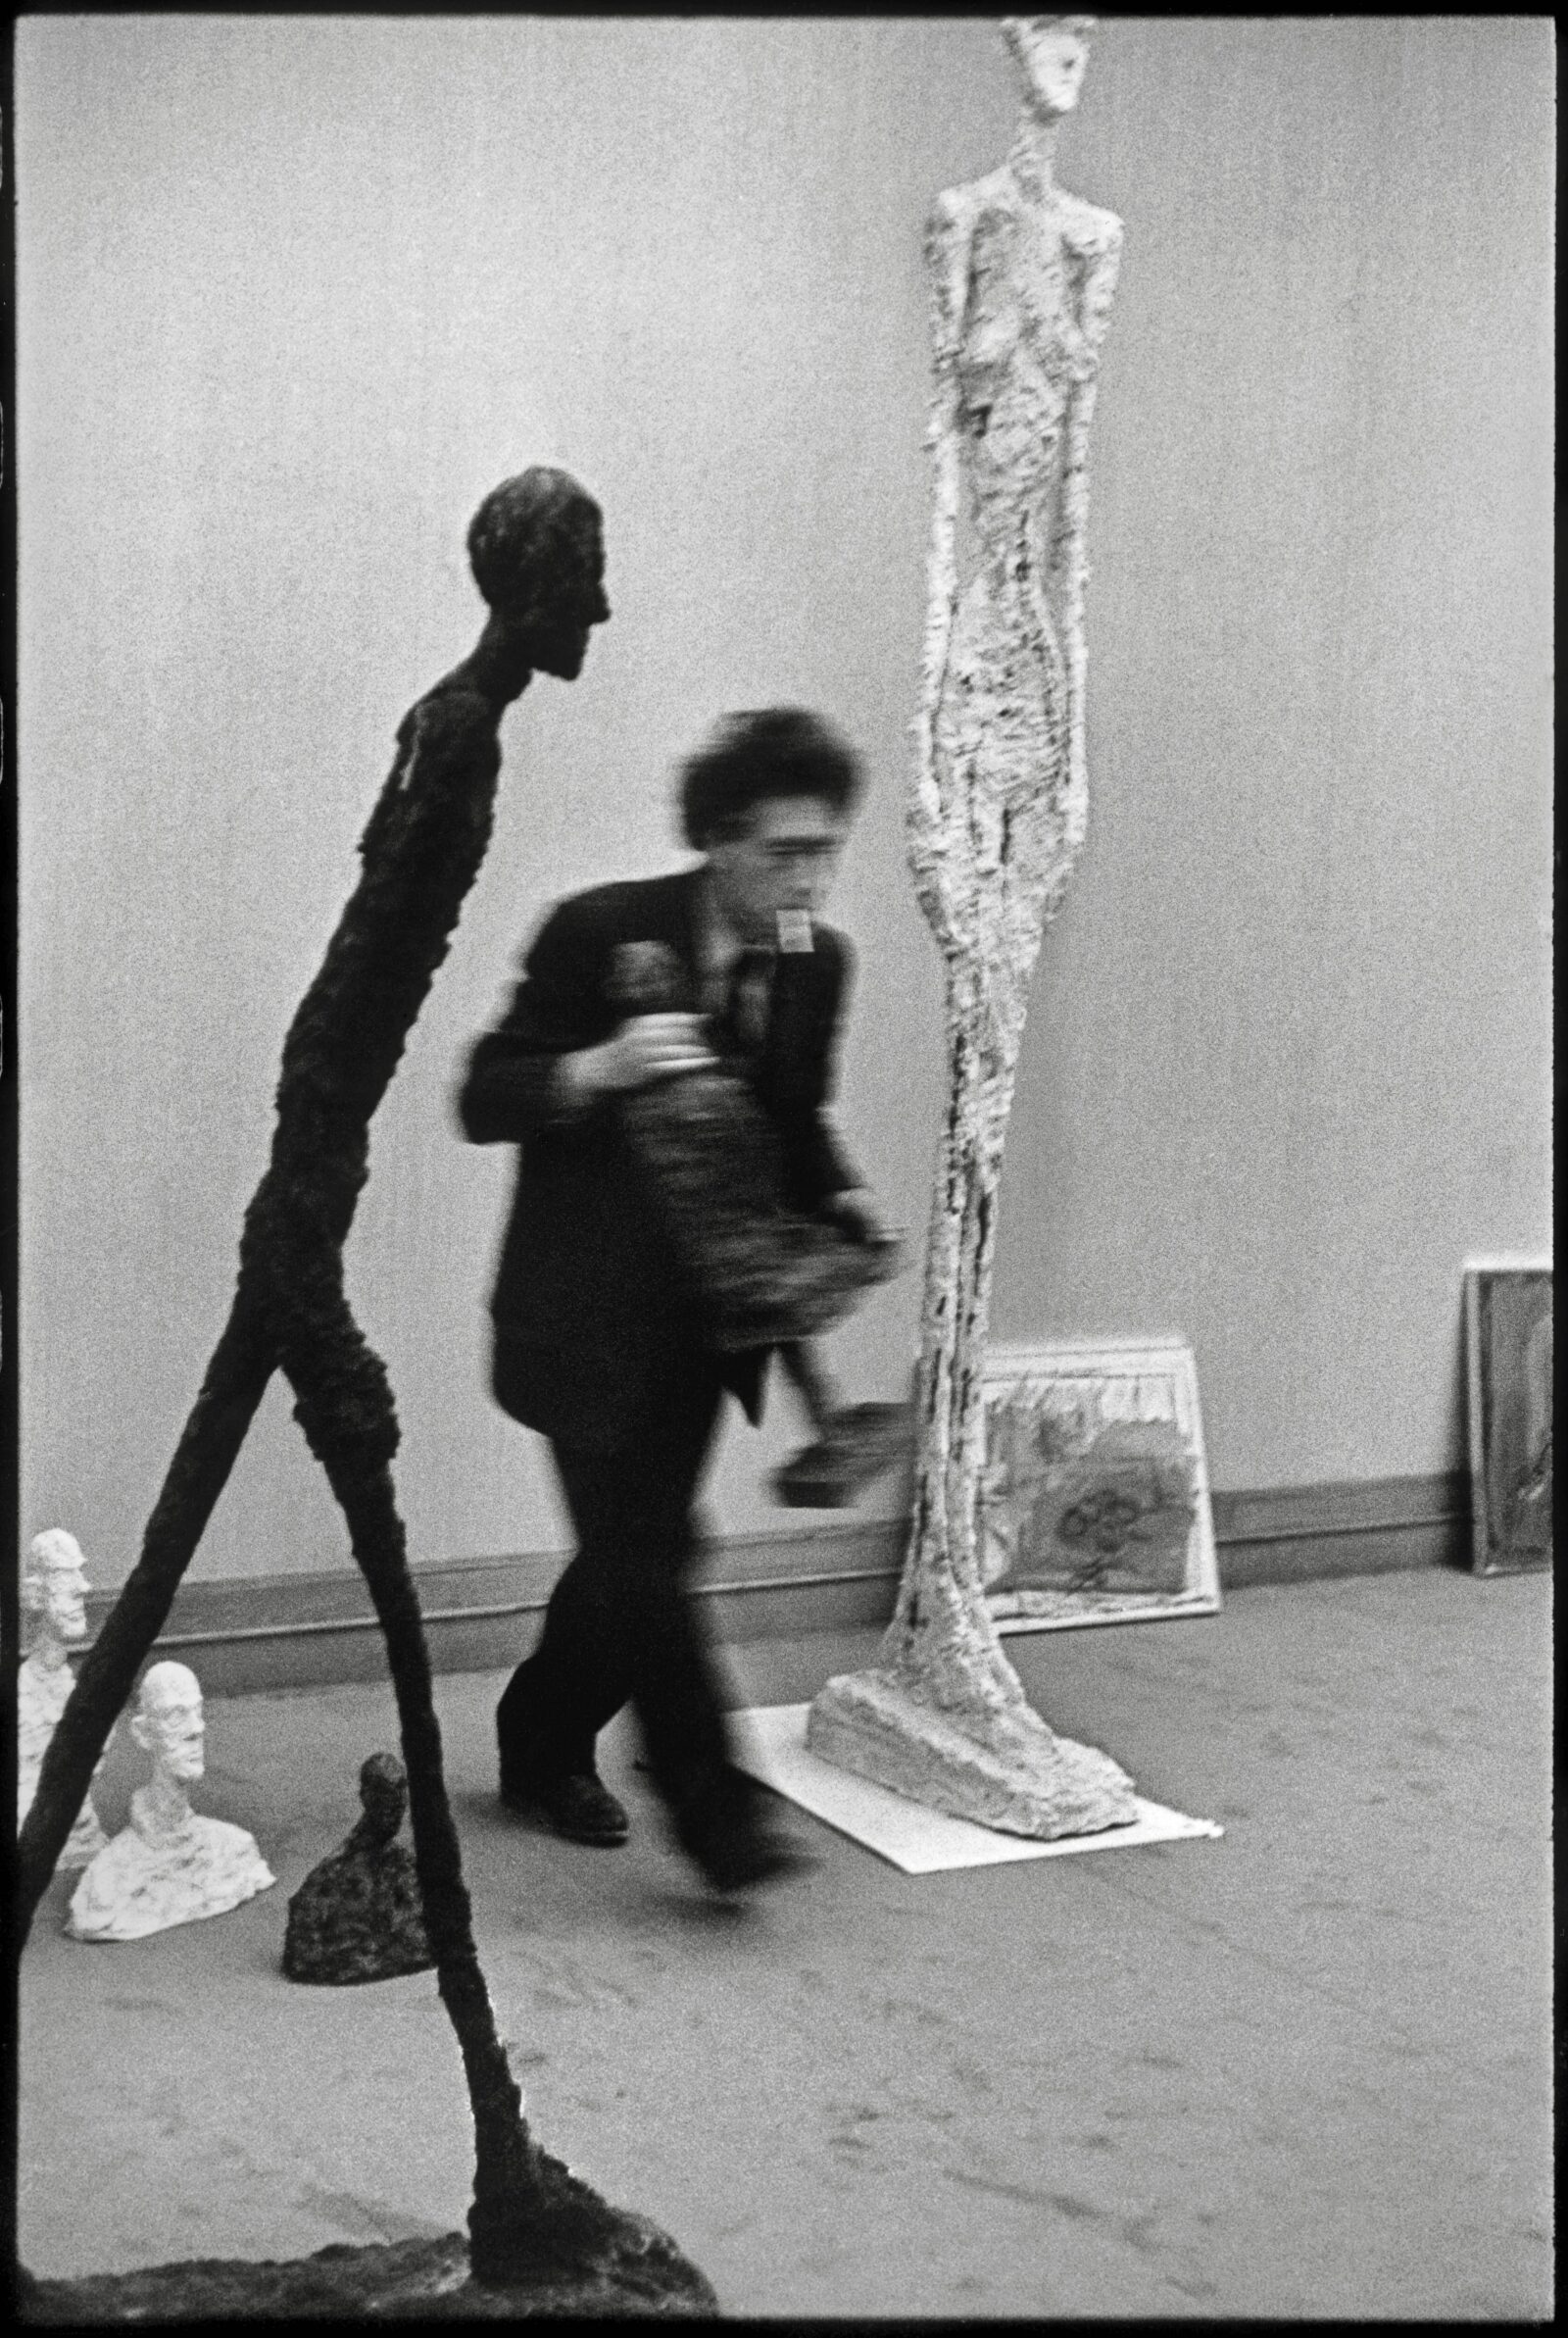 Henri Cartier-Bresson, Alberto Giacometti Installing His Exhibition, Galerie Maeght, Paris, c. 1961, silver print on paper, Archives,
Fondation Giacometti. © Fondation Henri Cartier-Bresson / Magnum Photos